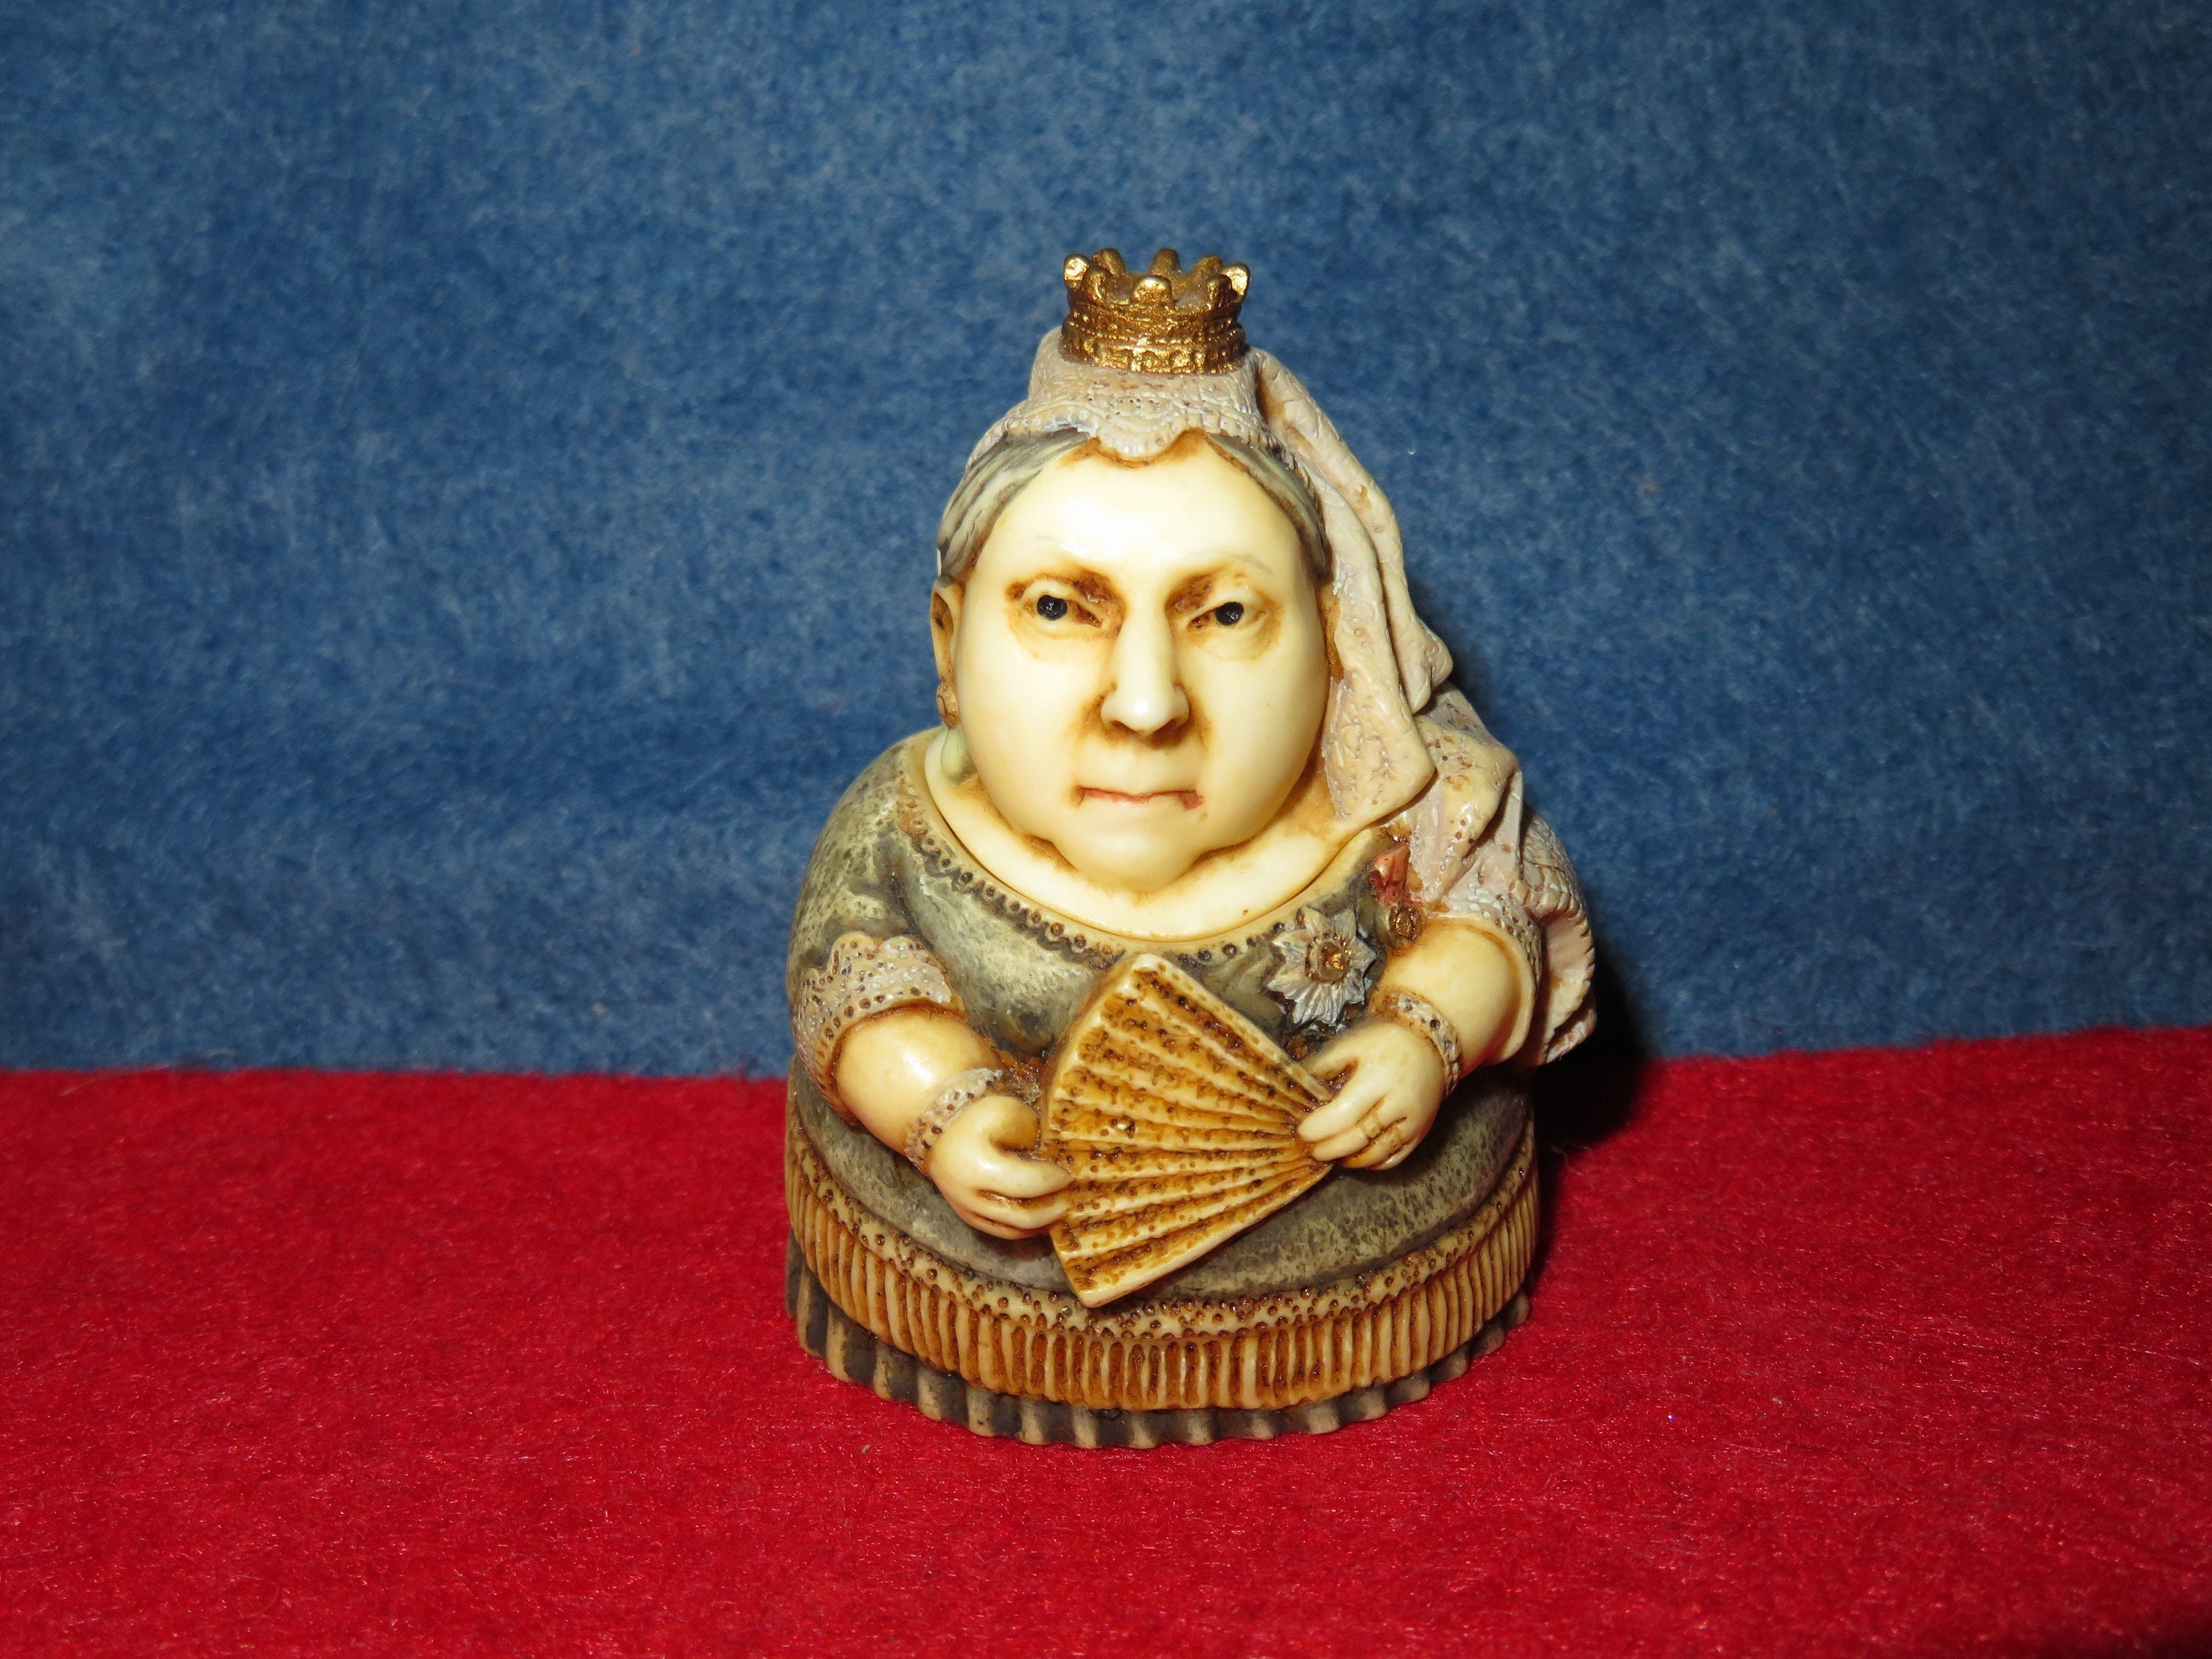 Pot Bellys figurines characters Queen of Sheba Franklin D Roosevelt Queen Victo